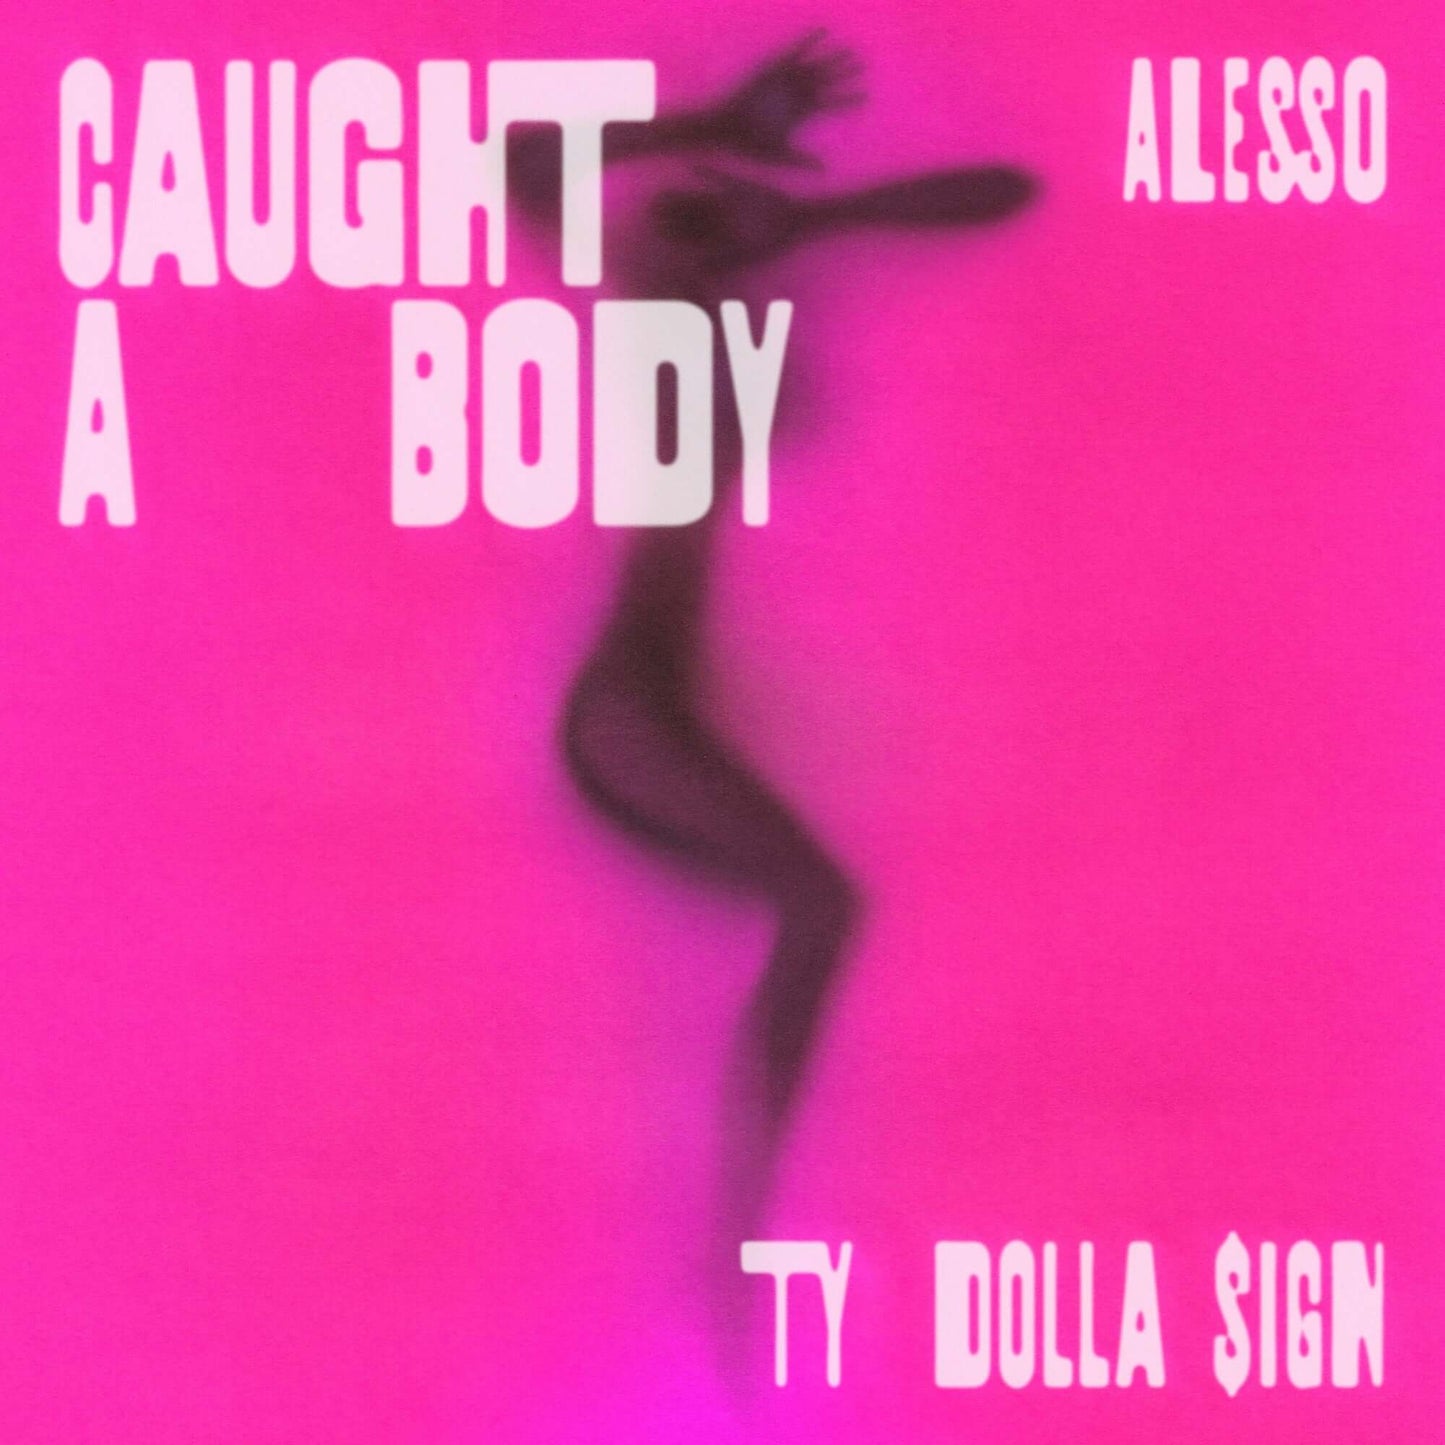 Alesso & Ty Dolla $ign - Caught A Body (Studio Acapella)